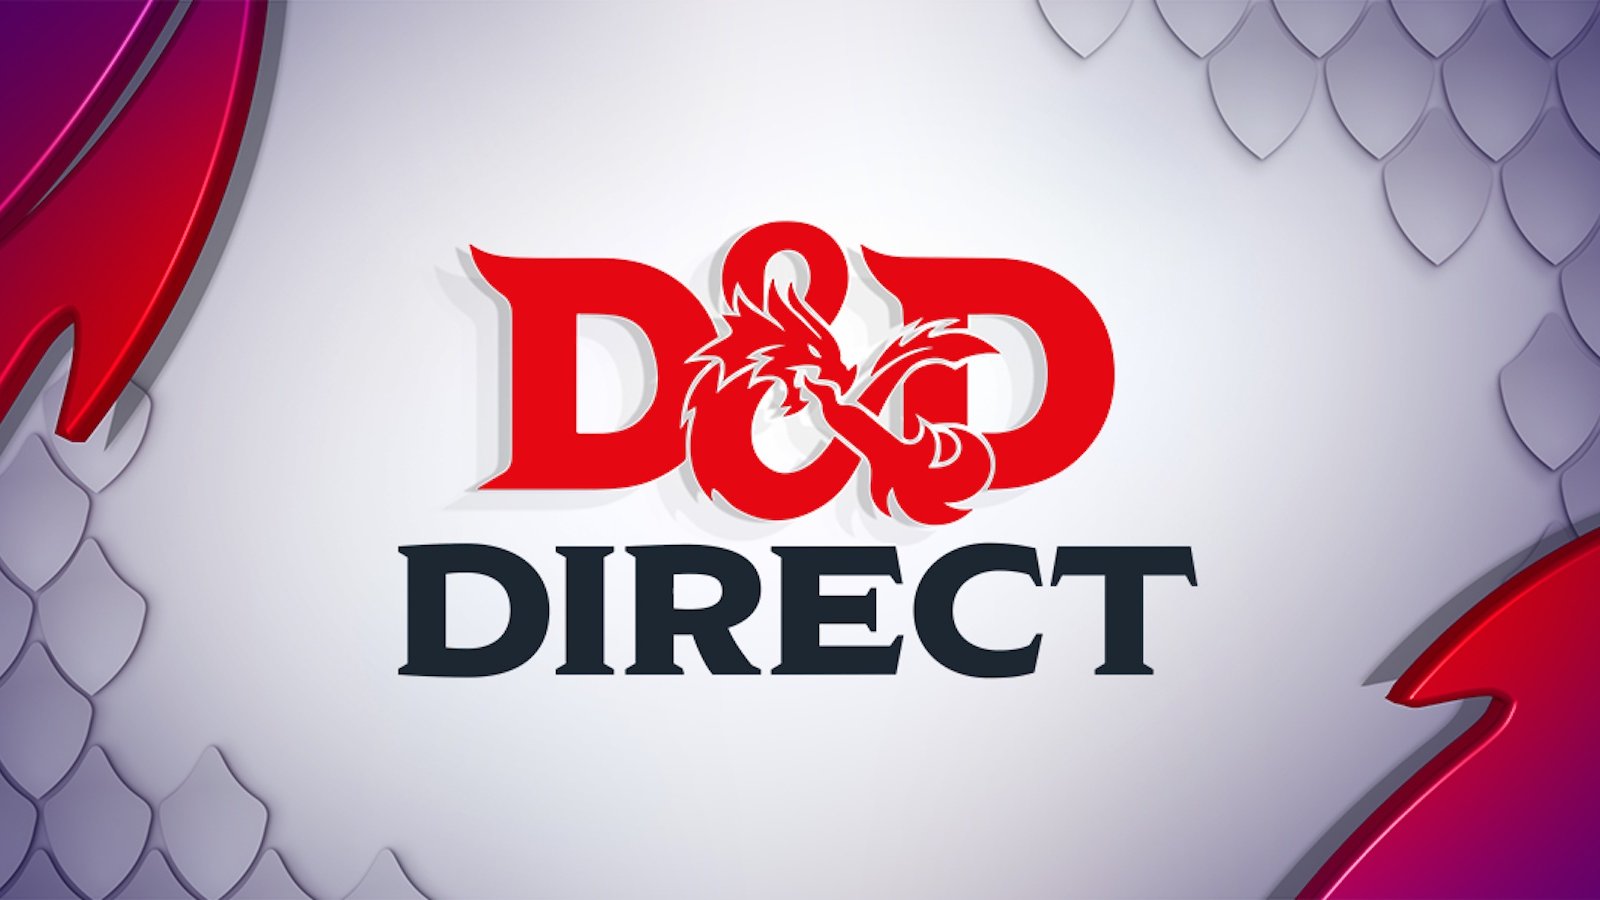 D&D Direct annunciato: data e orario dell'evento sul futuro di Dungeons & Dragons